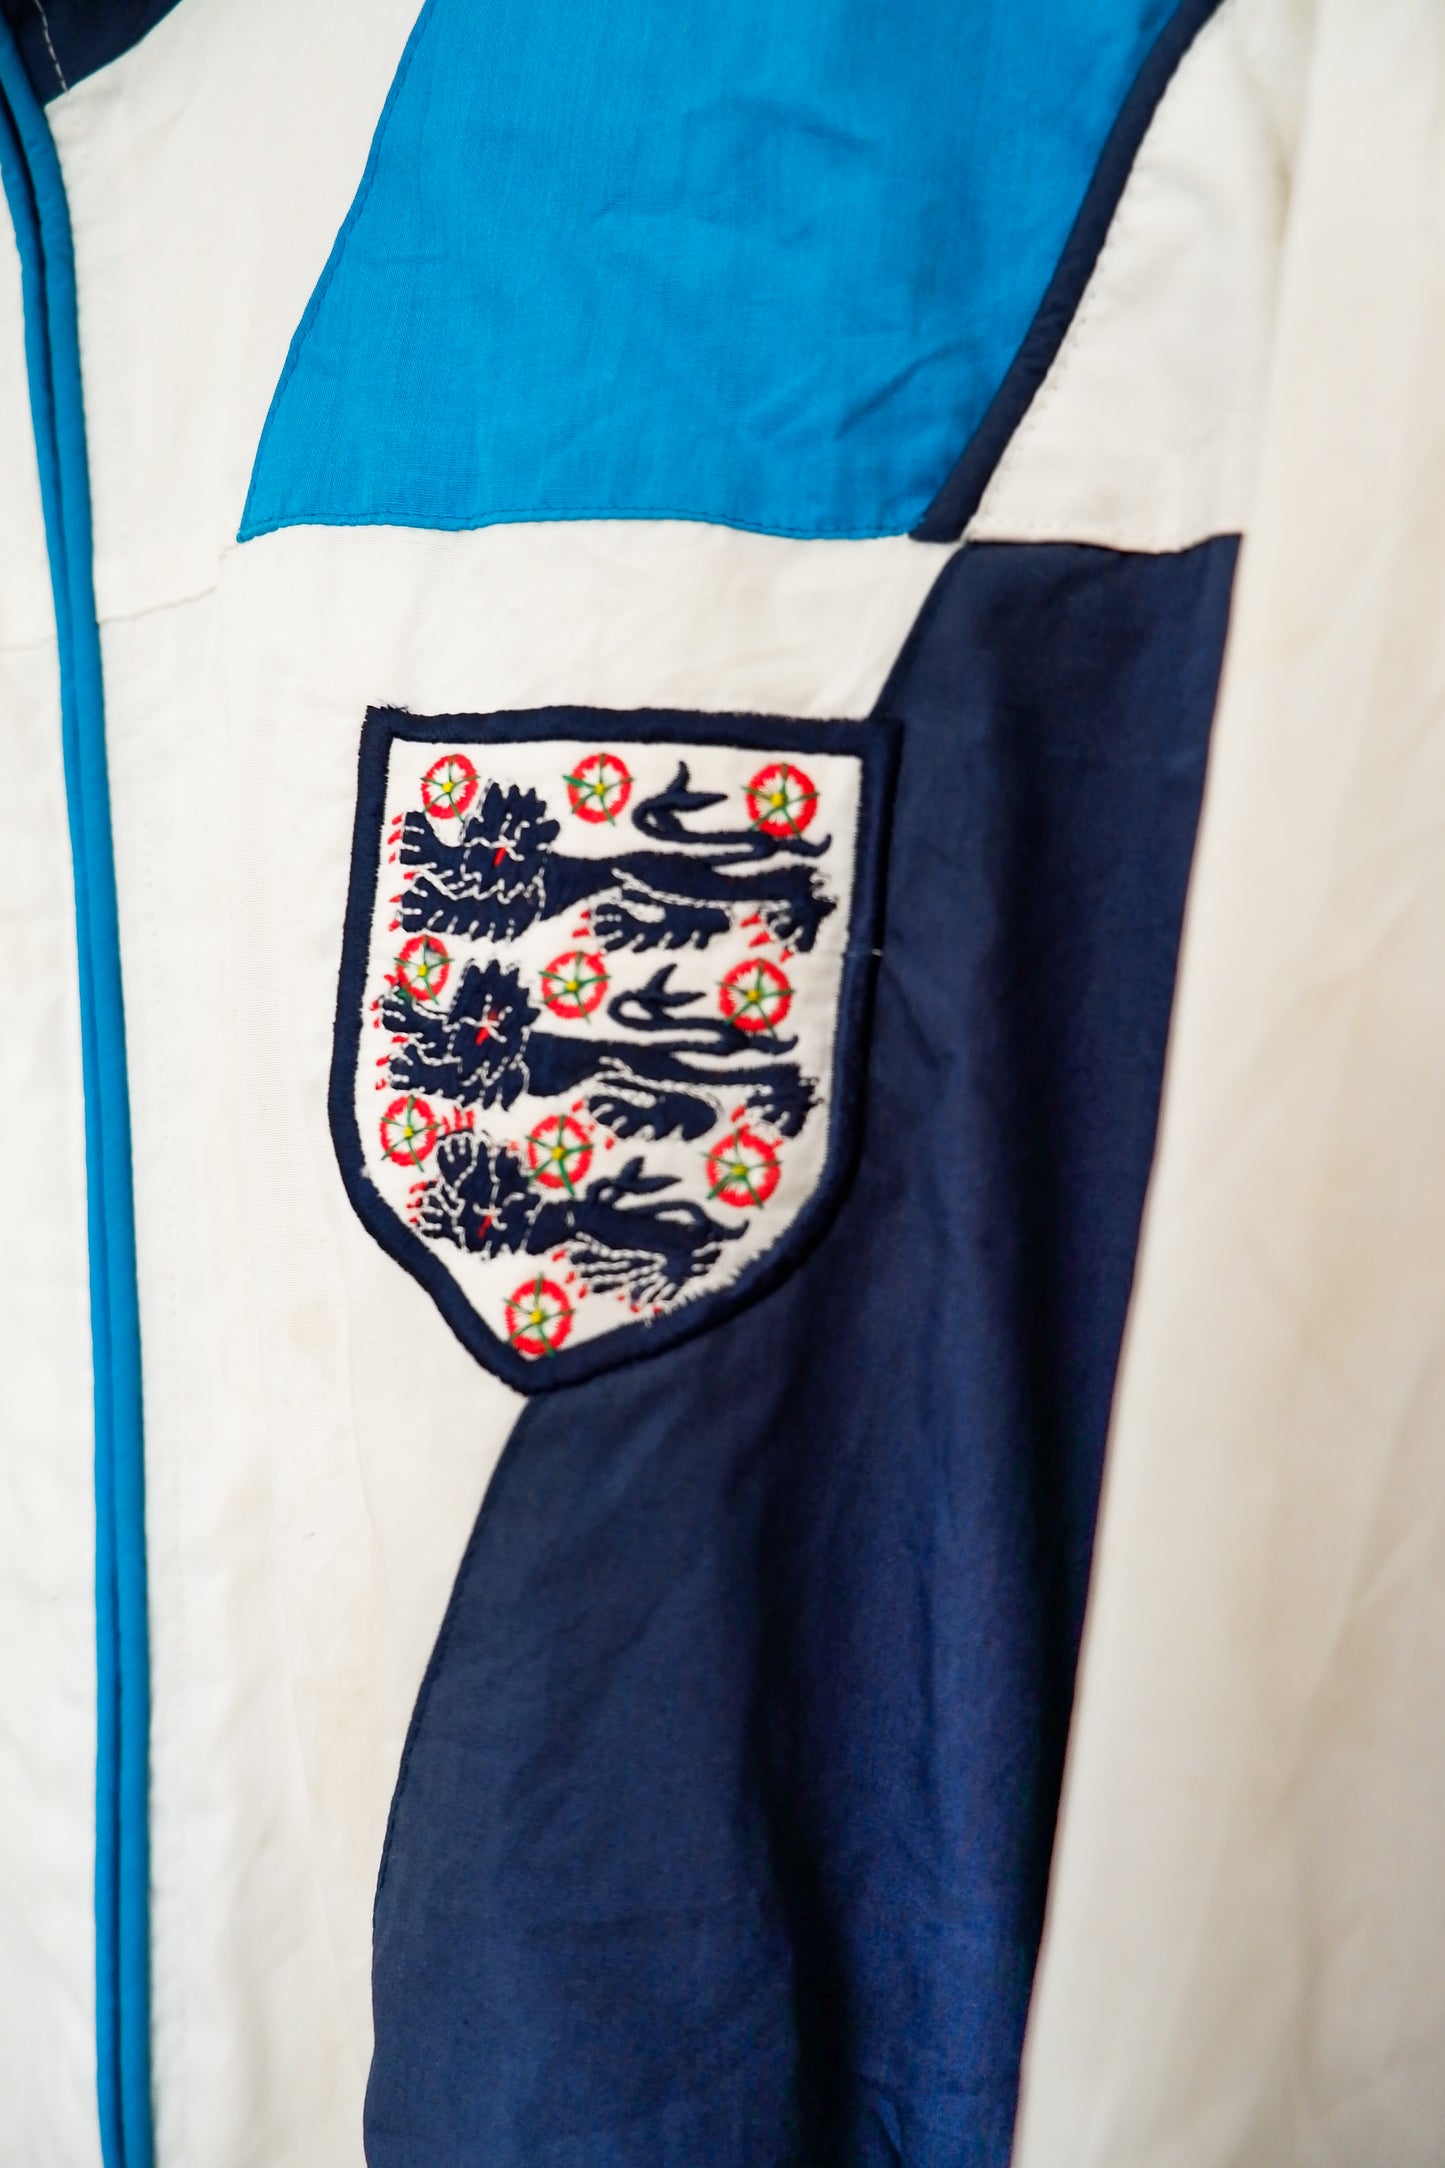 Authentic England 1995/96 Anthem Jacket Size M